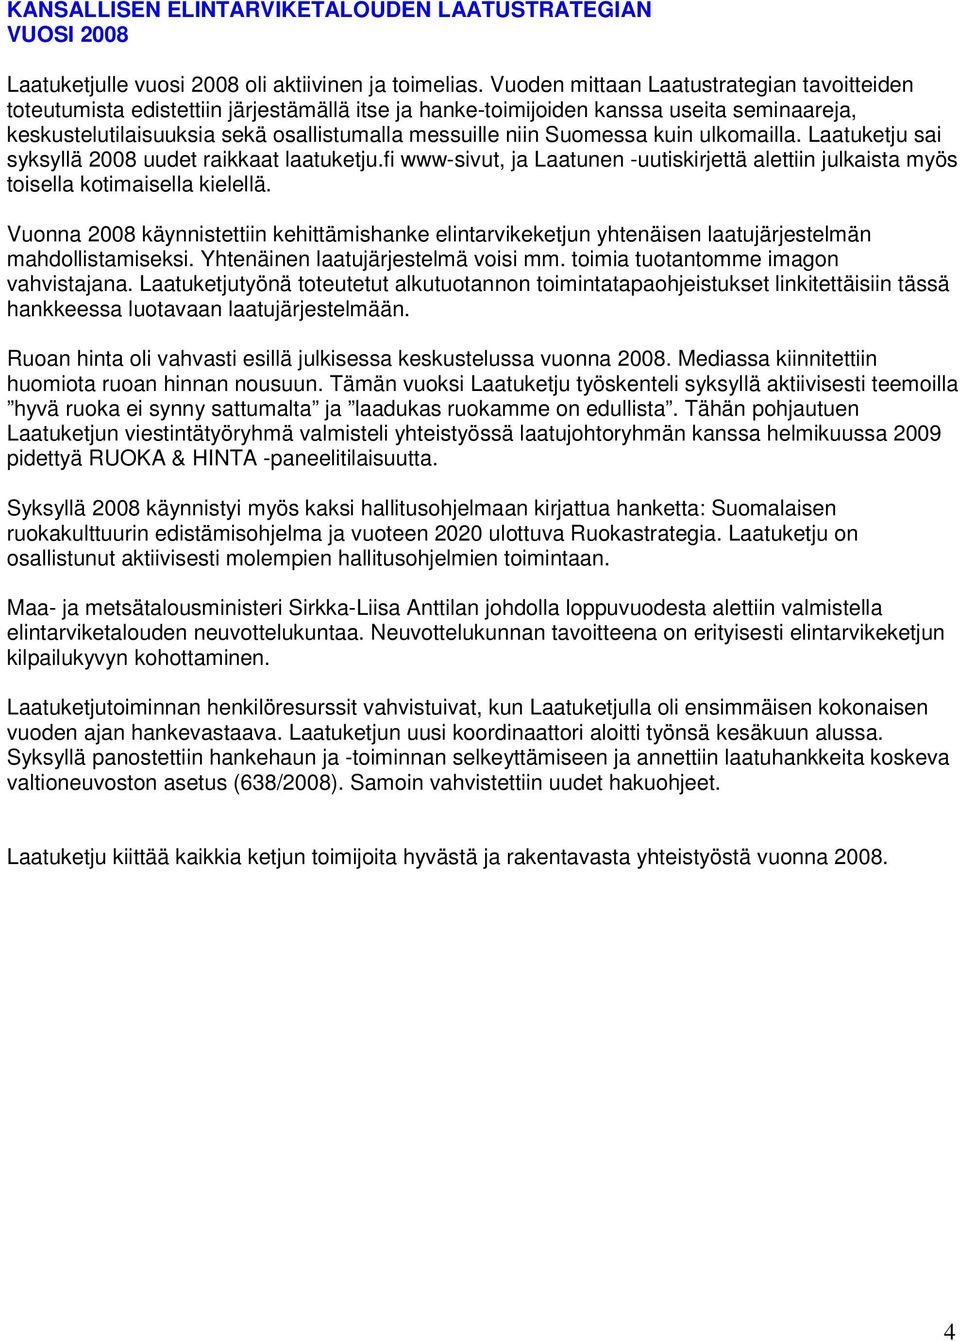 Suomessa kuin ulkomailla. Laatuketju sai syksyllä 2008 uudet raikkaat laatuketju.fi www-sivut, ja Laatunen -uutiskirjettä alettiin julkaista myös toisella kotimaisella kielellä.